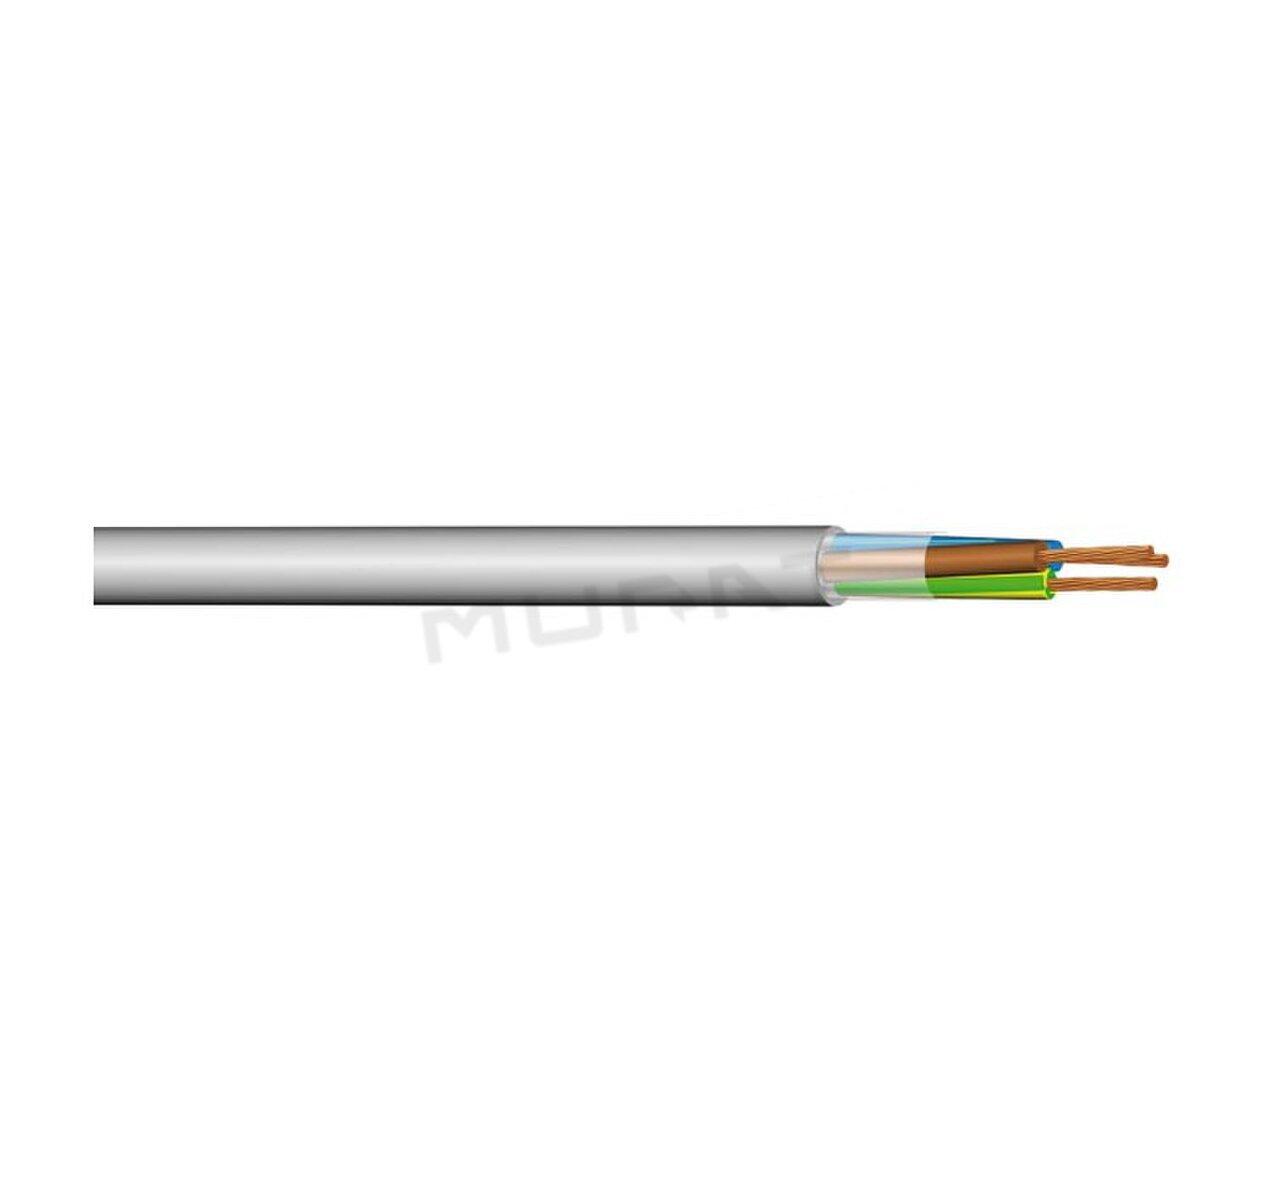 Kábel CMSM 24Gx1,5 mm2